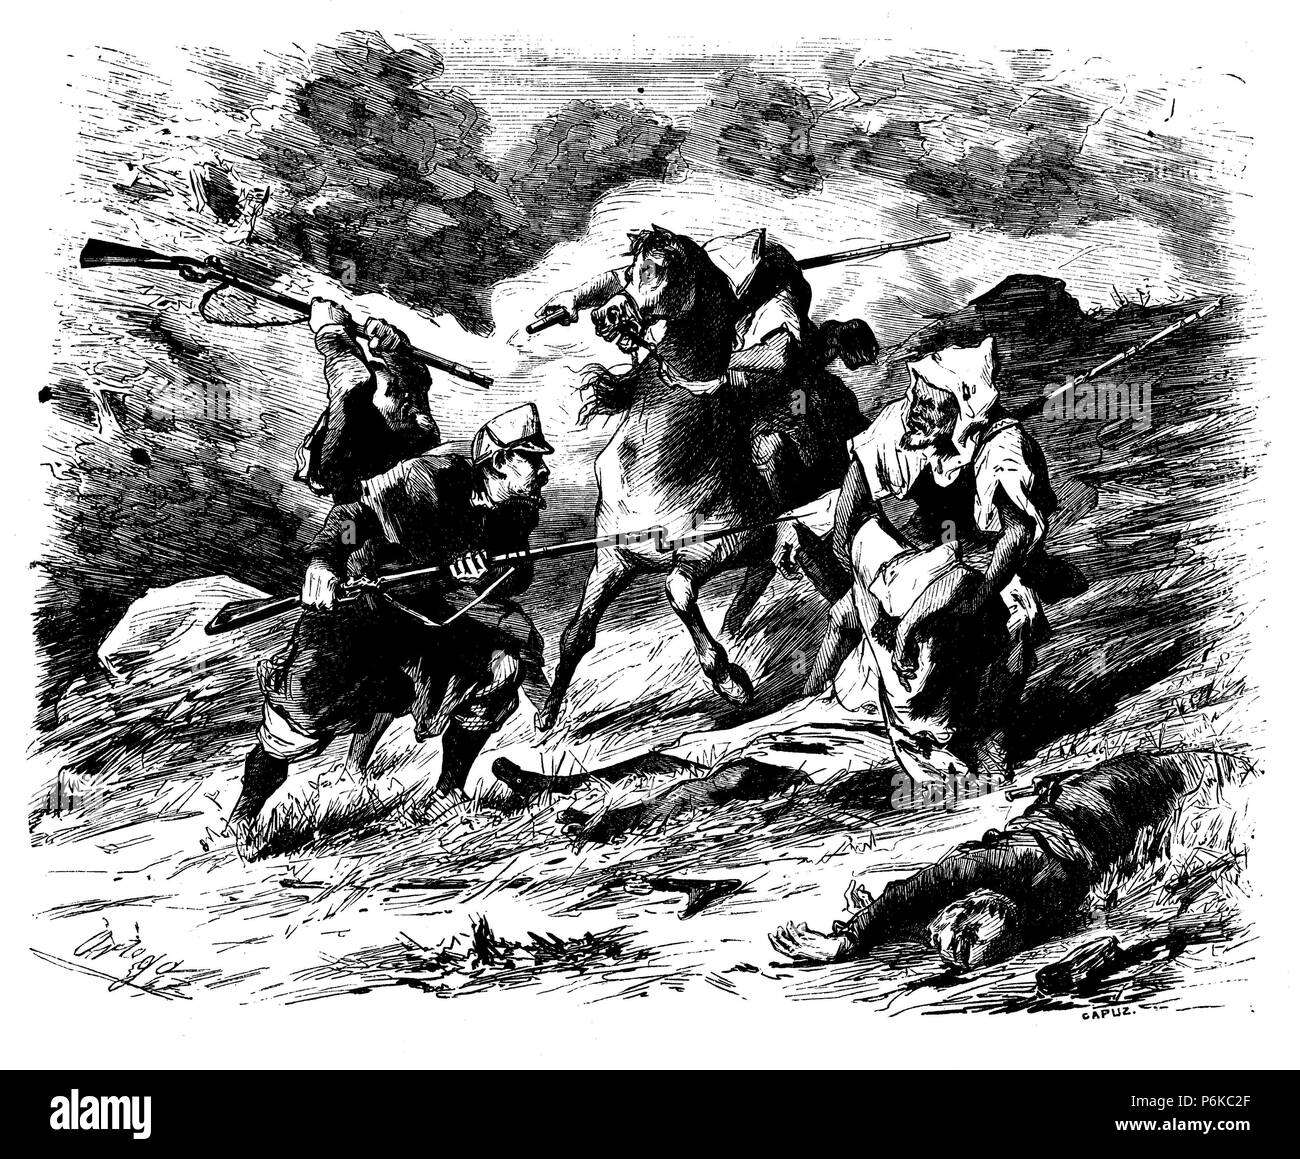 Guerra de África. Año 1860. Lucha entre españoles y marroquíes por el rescate de heridos. Dibujo de Ortego. Grabado de 1860. Stock Photo